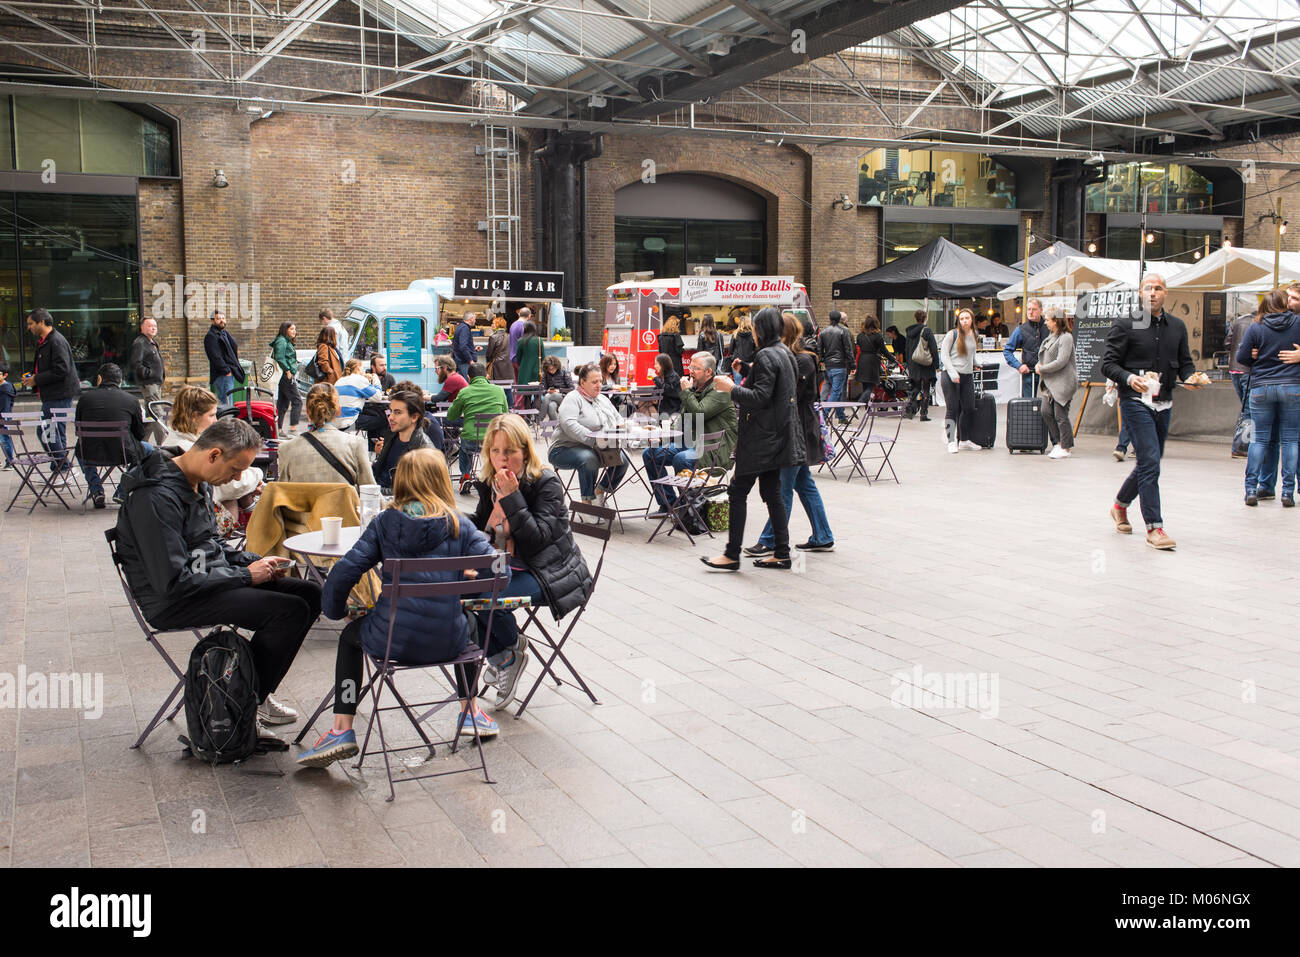 Les personnes mangeant et assis dans la zone de l'auvent inddor Market, King's Cross, Londres. Marché couvert est un marché près de la place du grenier à va Banque D'Images